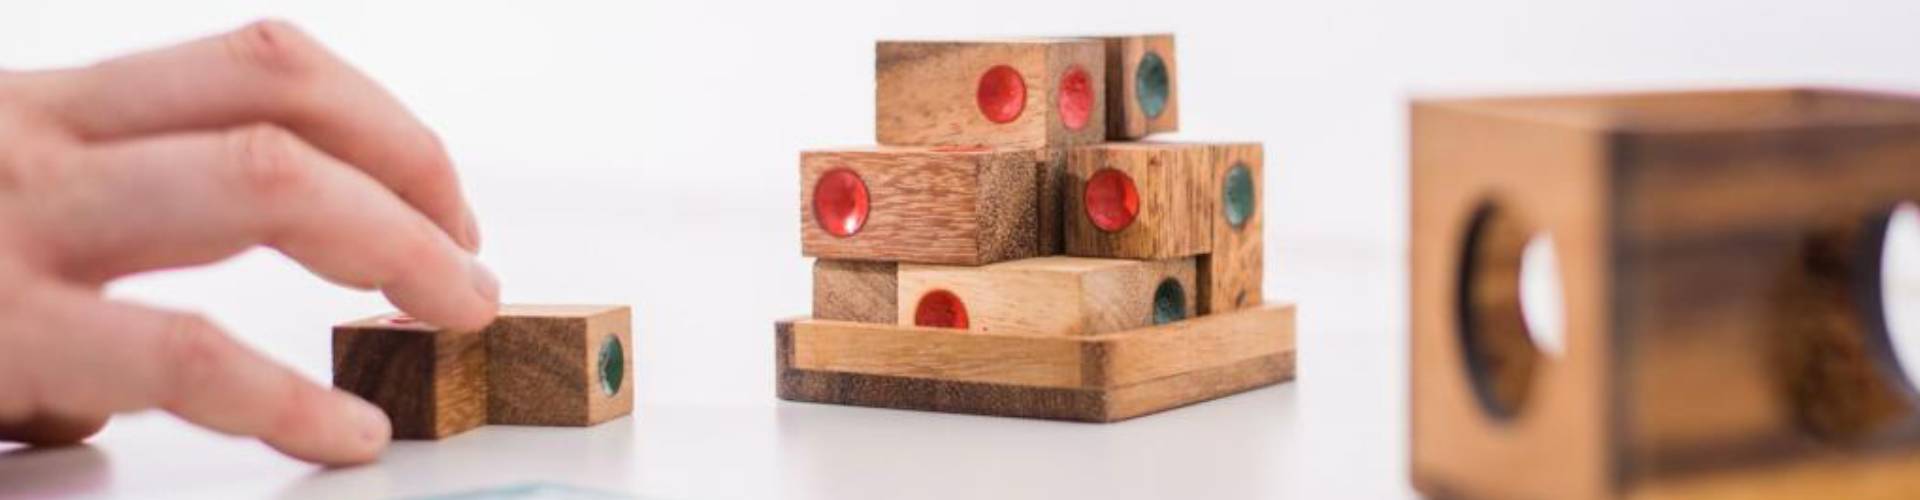 أشكال هندسية من الخشب